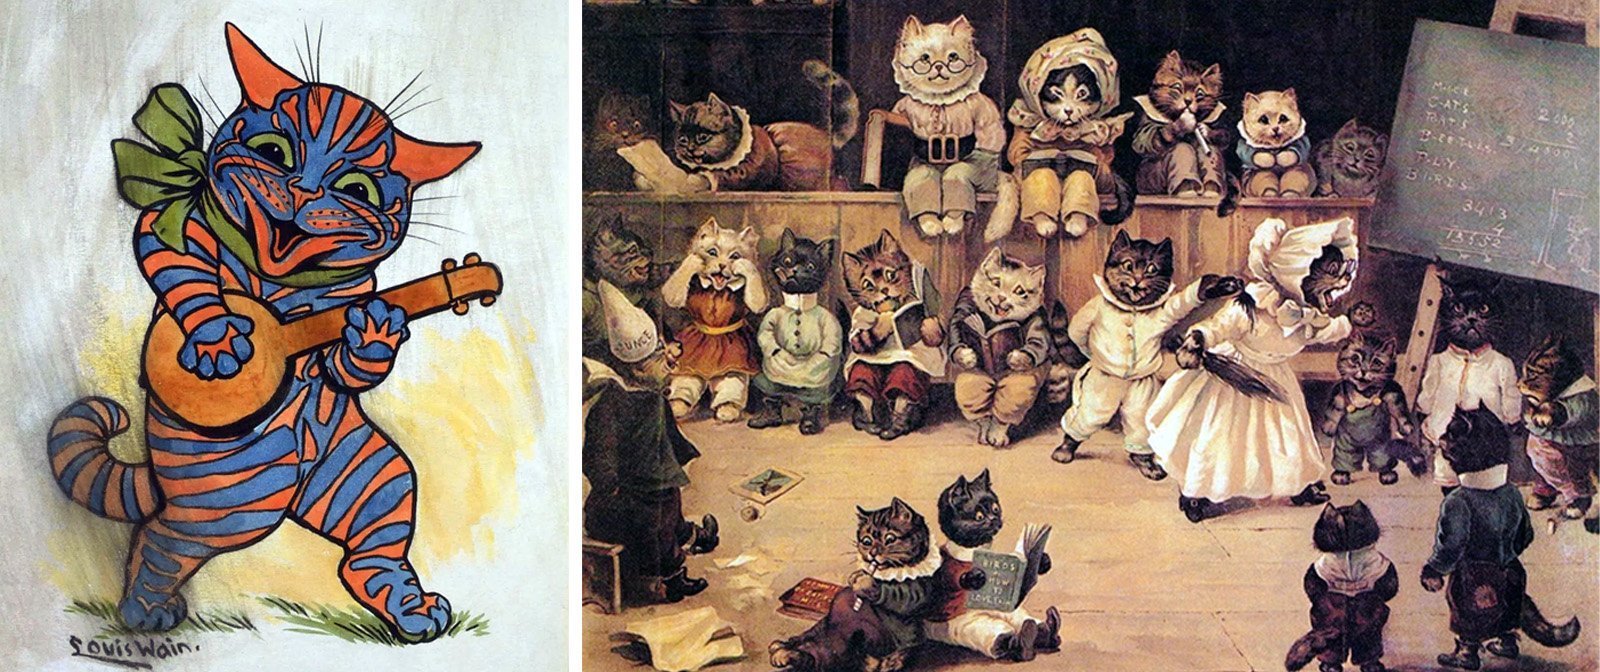 Родился с заячьей губой, всю жизнь рисовал кошек, а умер в психиатрической больнице. Странная судьба художника Луиса Уэйна.